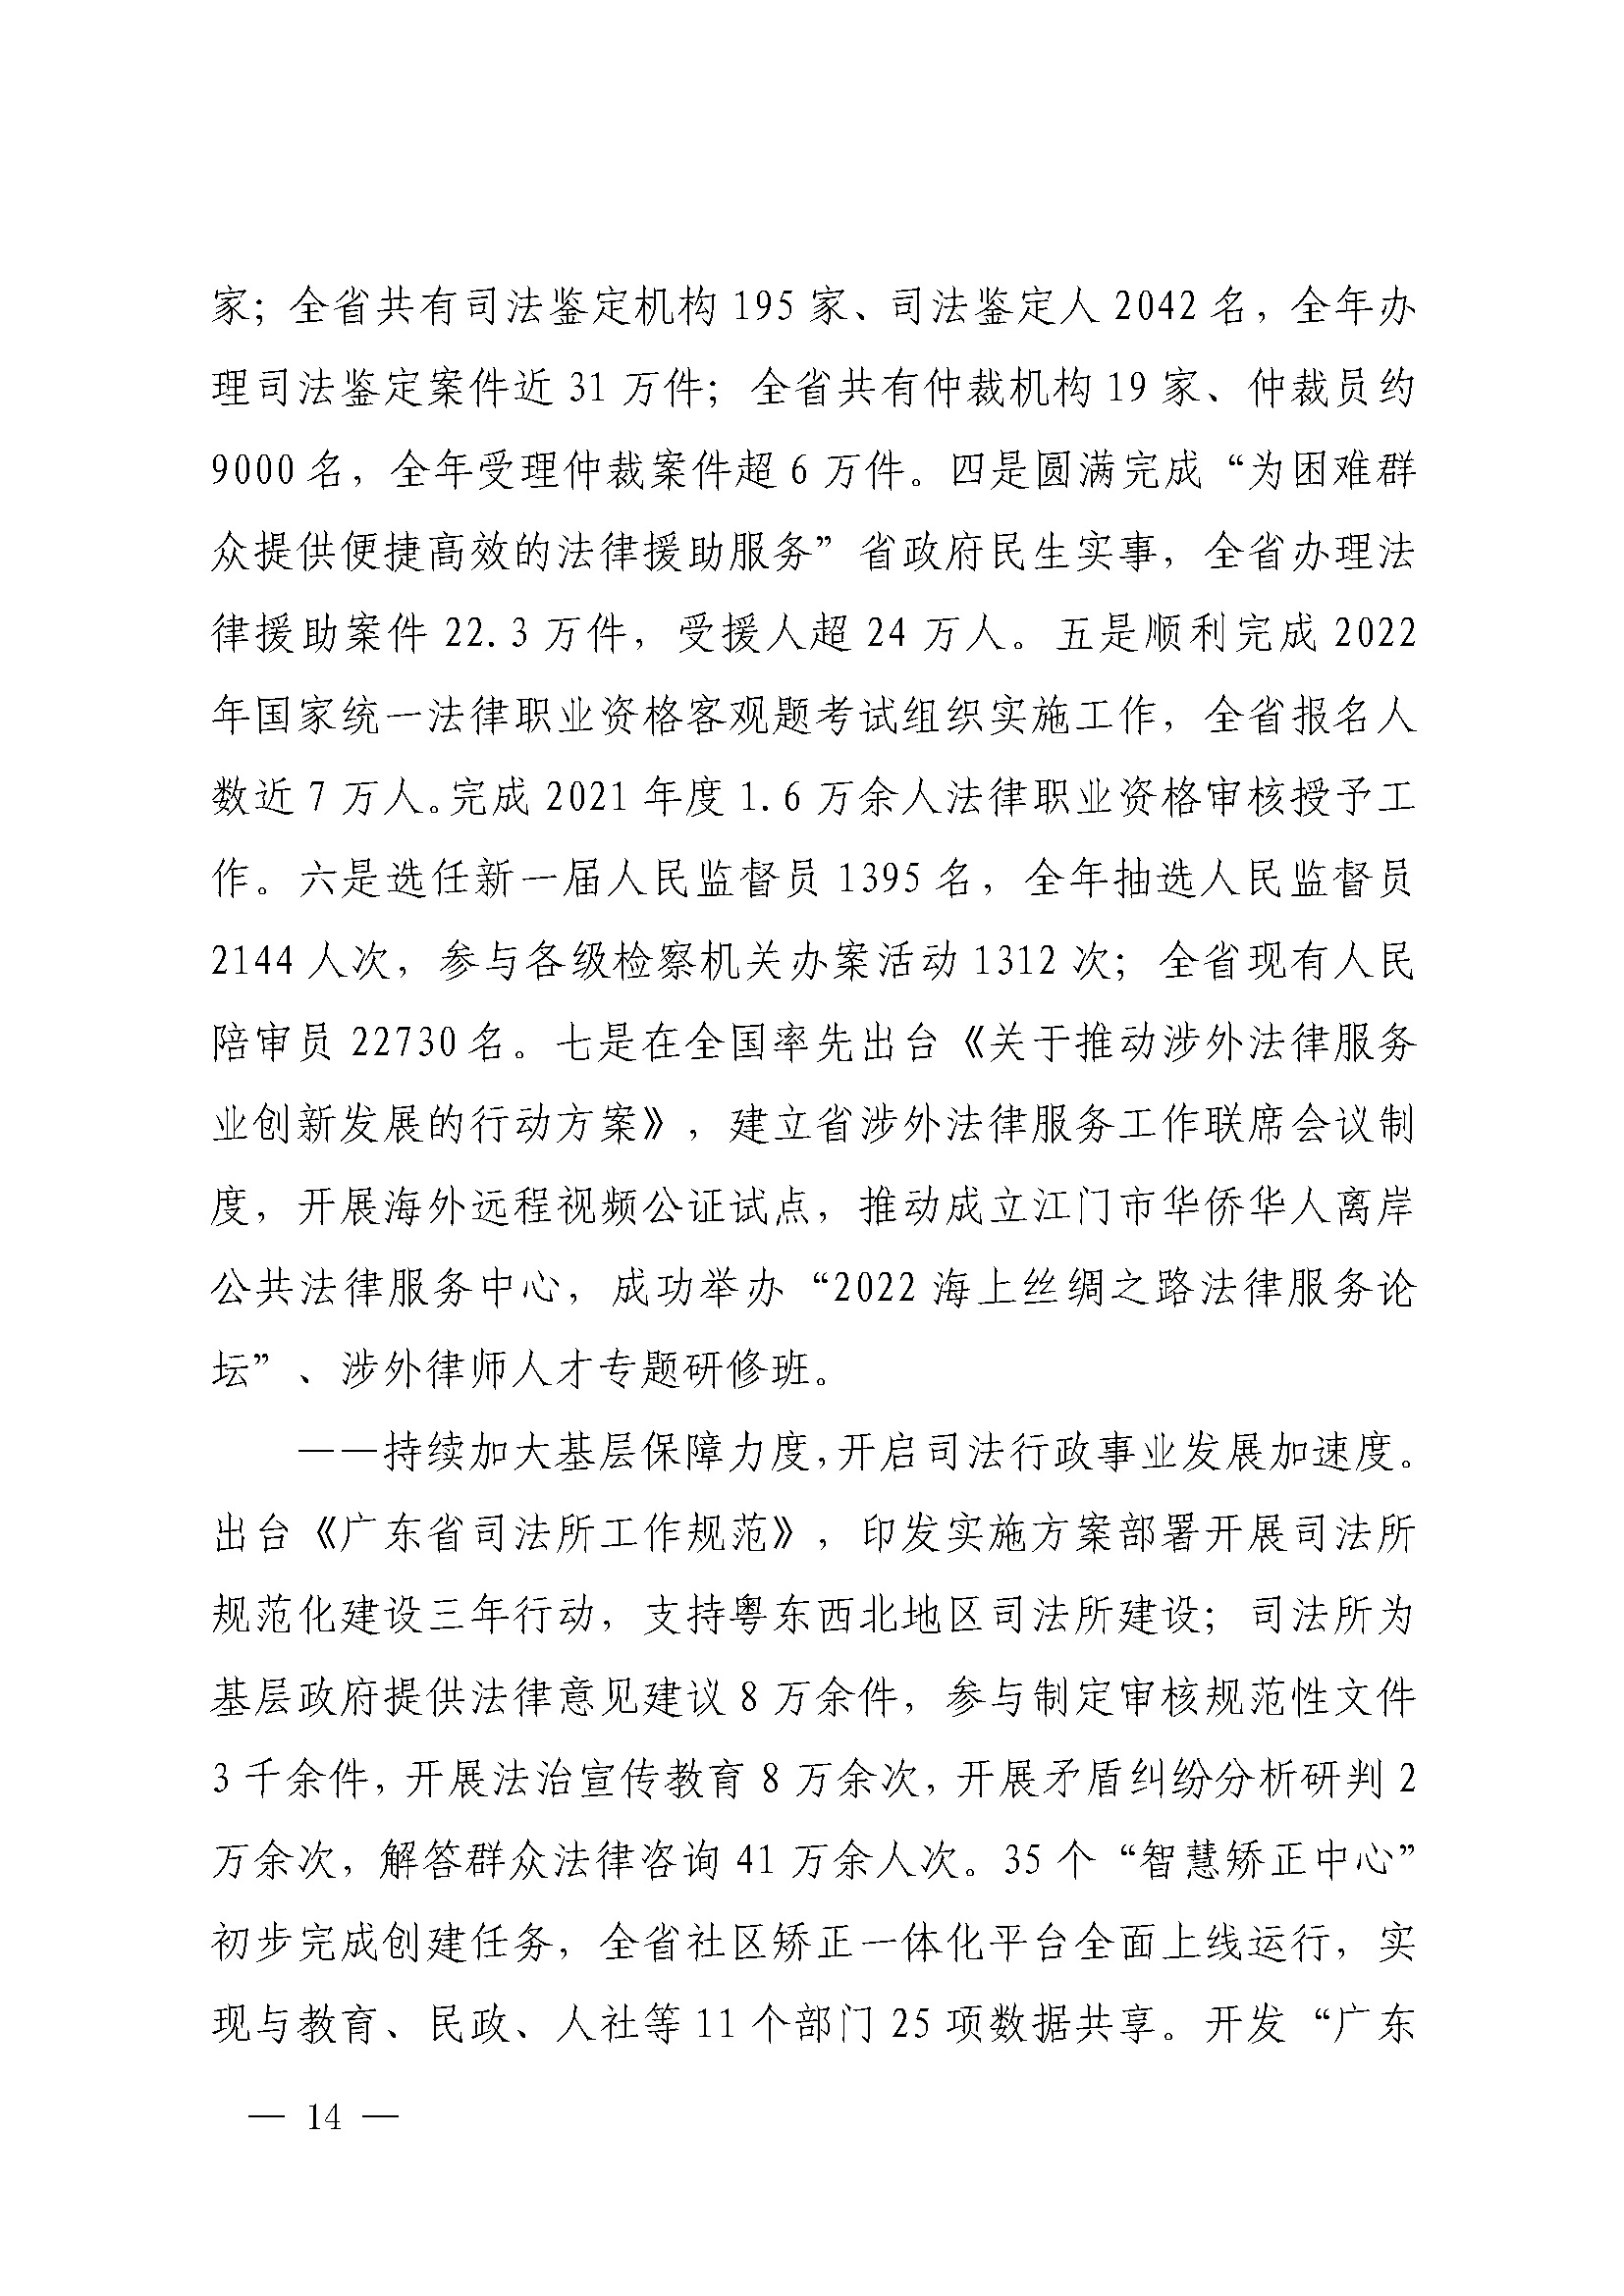 广东省司法厅2022年度部门整体支出绩效自评报告_页面_14.jpg